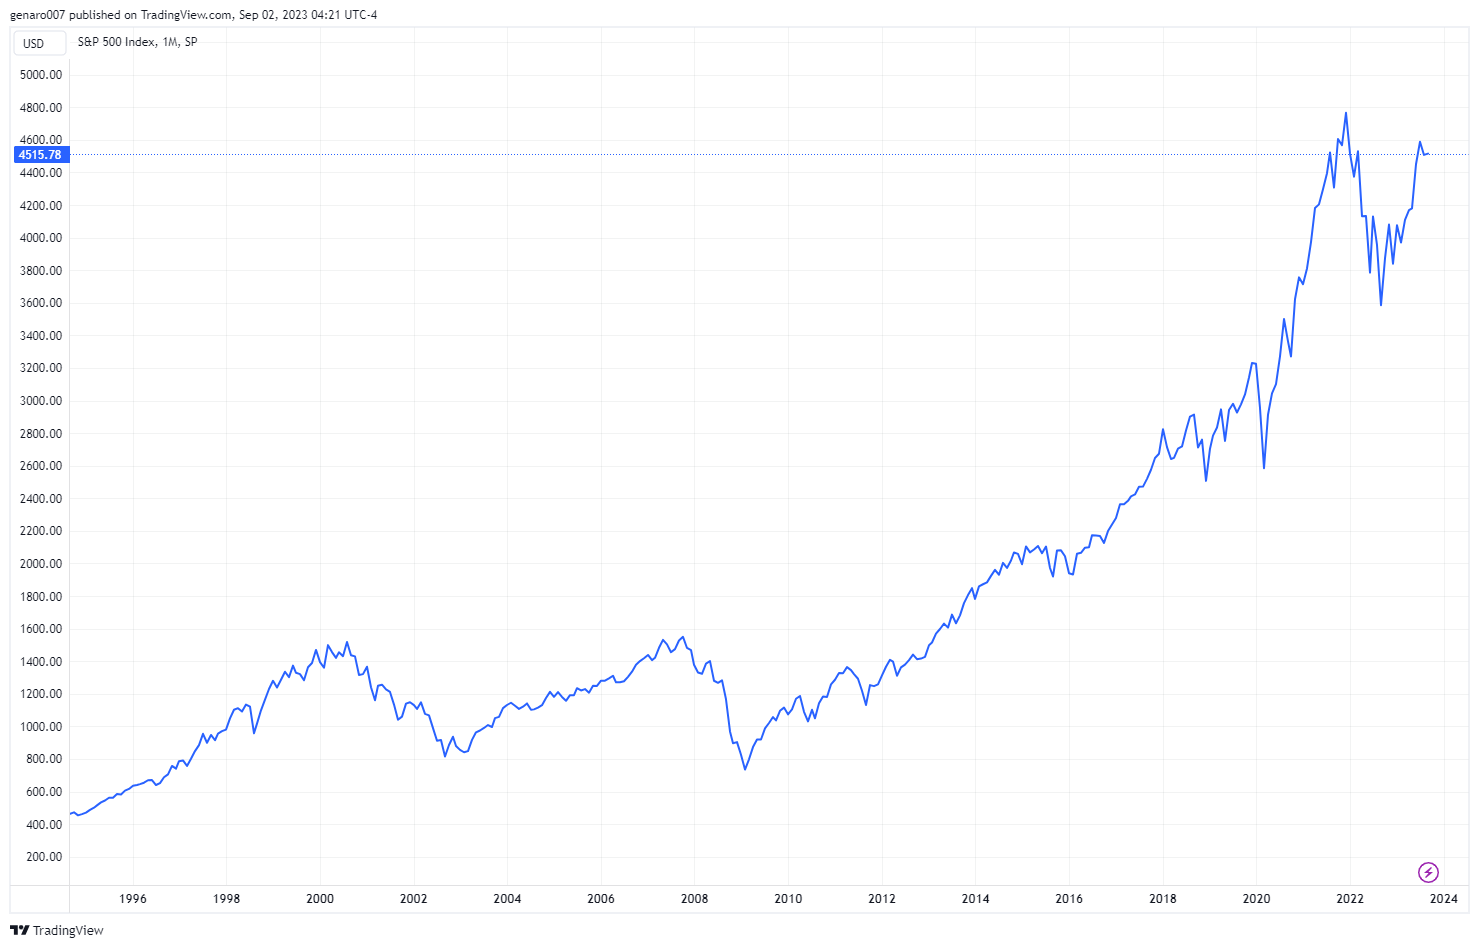 Historický vývoj indexu S&P 500. Známé finanční krize jsou z grafu jasně čitelné. Můžeme však učinit závěr, že i přes všechny možné krize investice do akcií byla vždy dobrá volba za posledních 30 let.